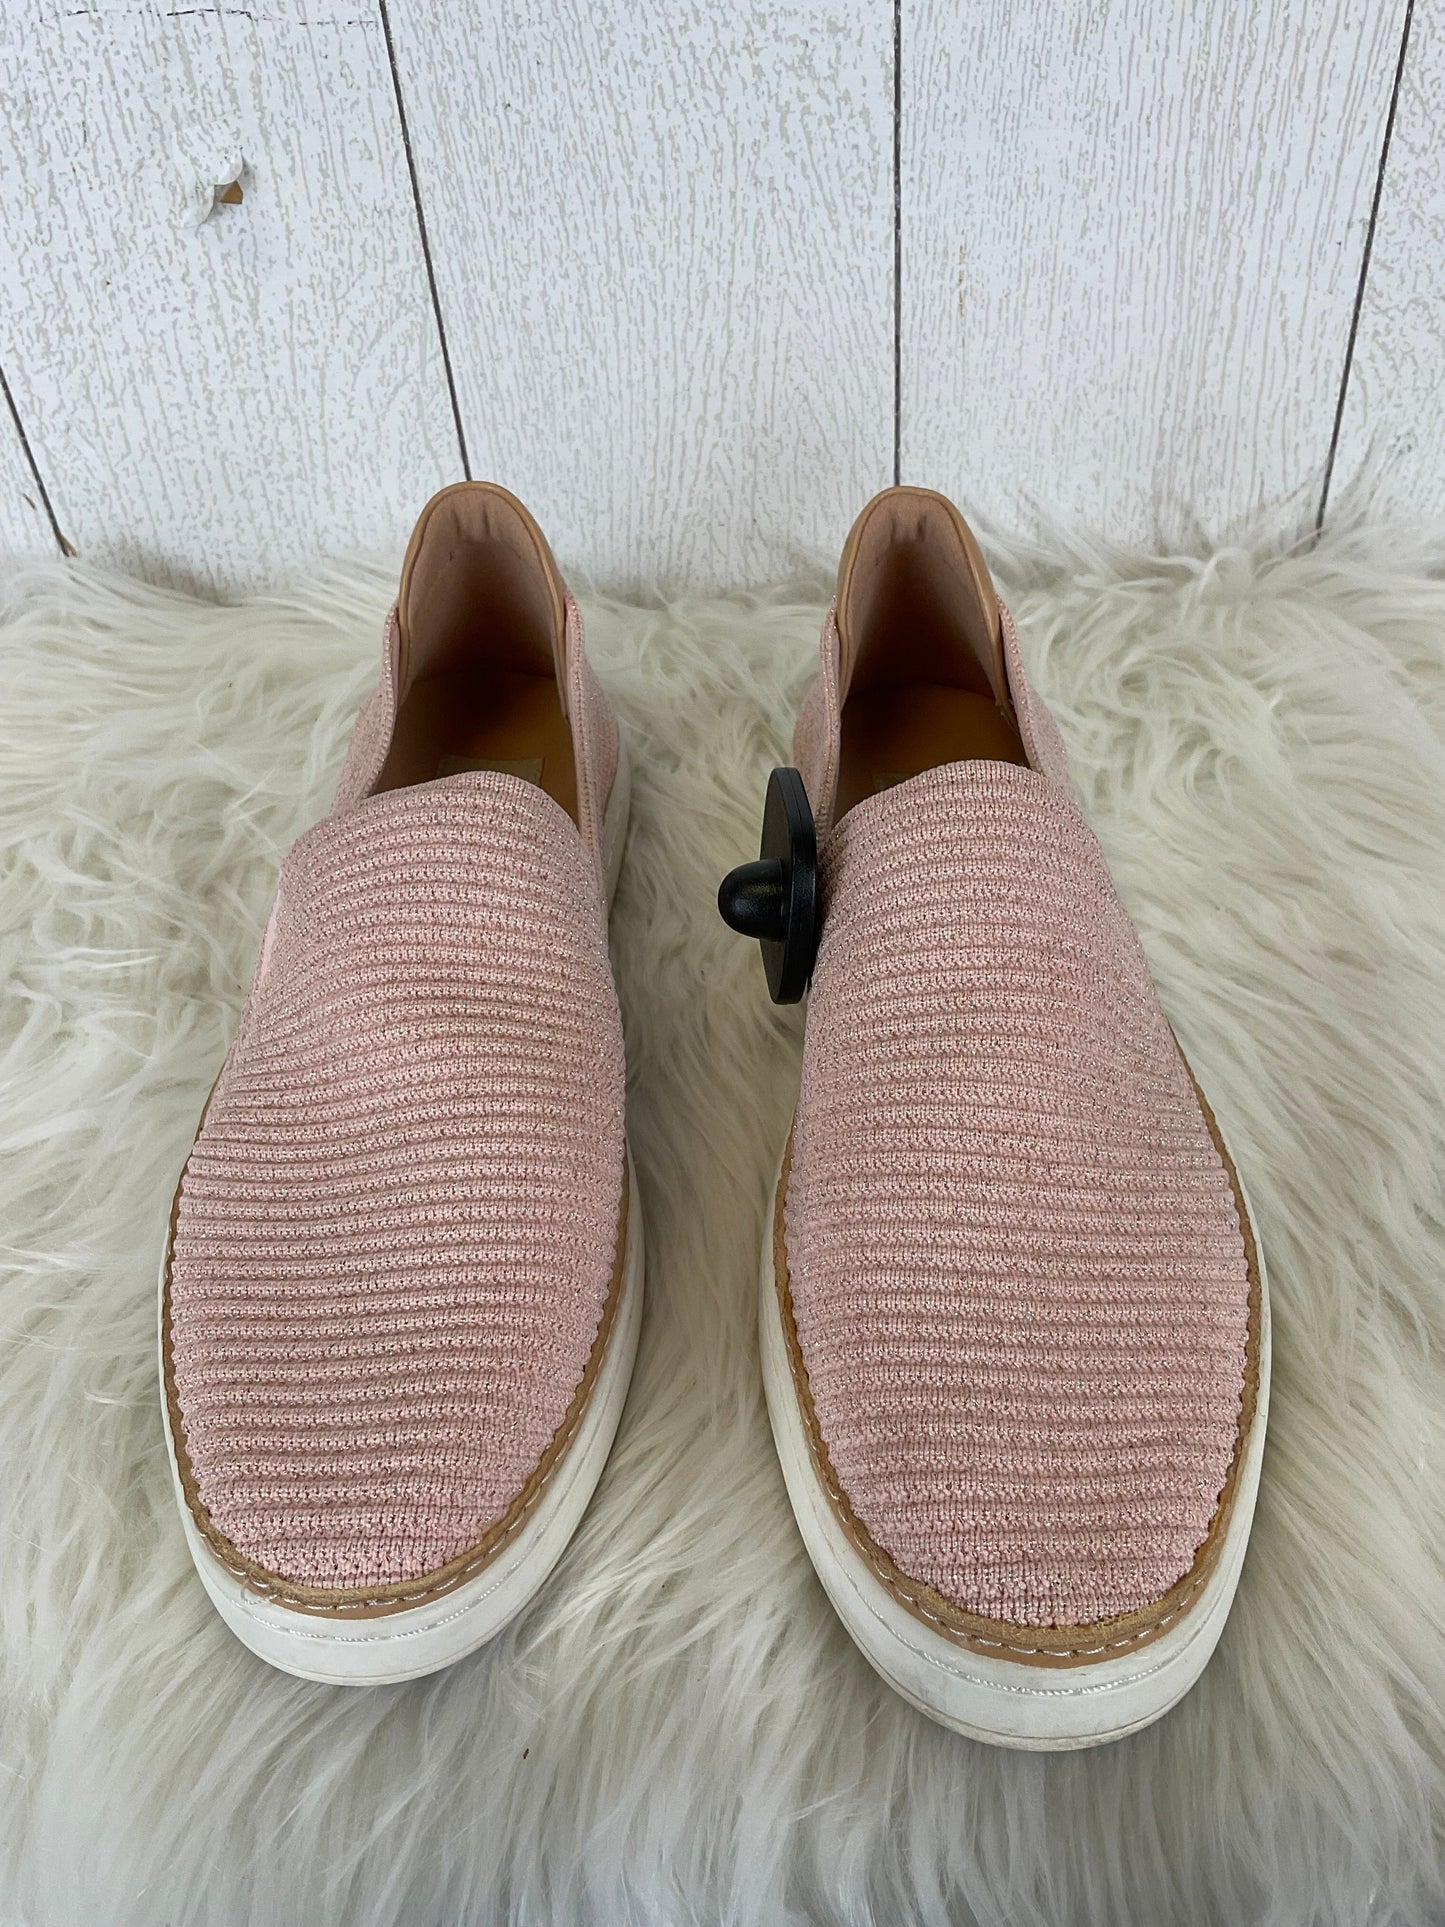 Pink Shoes Designer Ugg, Size 9